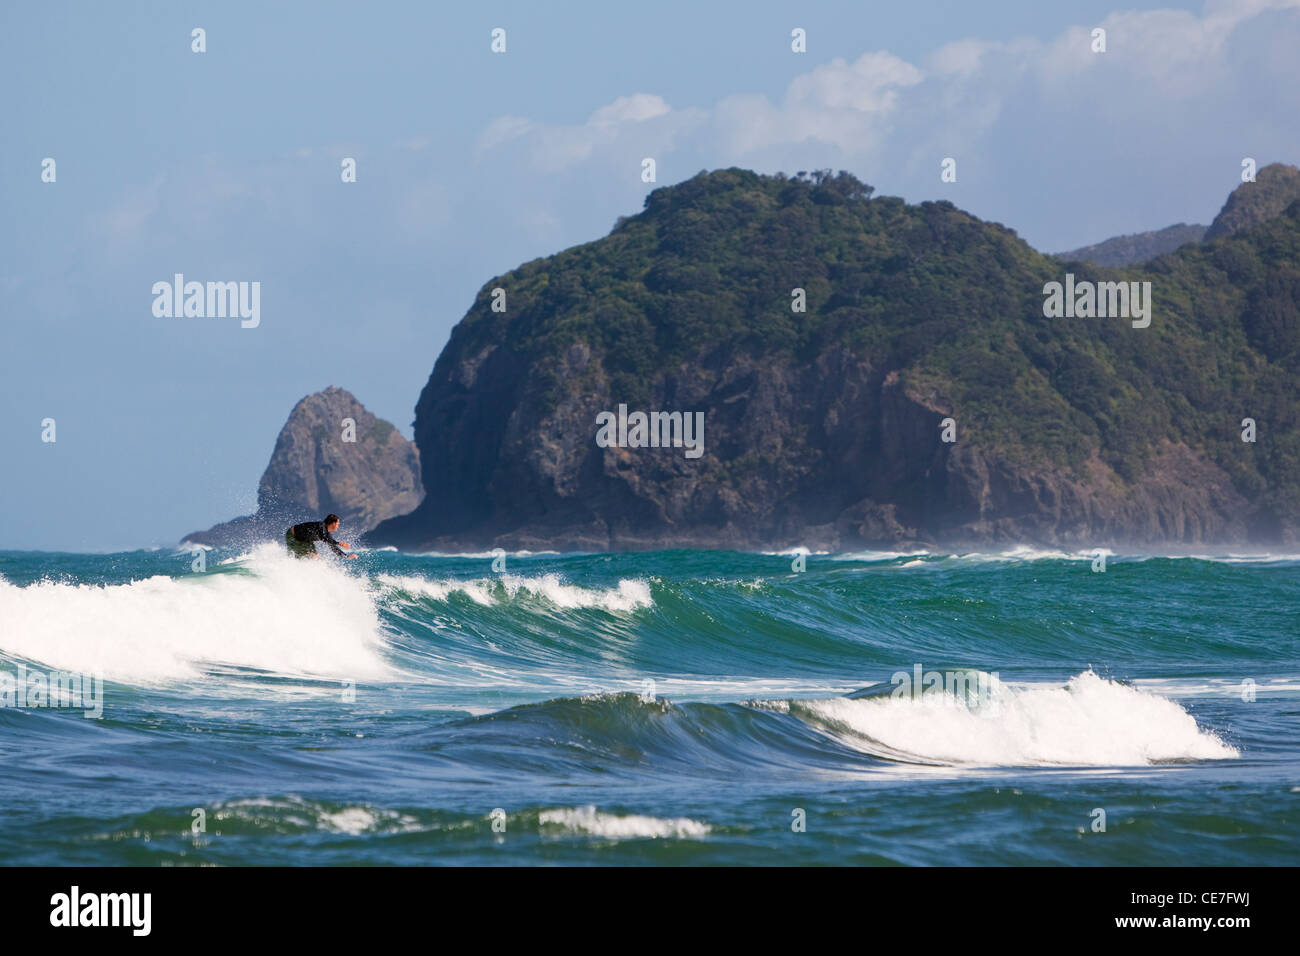 La capture d'un surfeur vague. Piha, Waitakere Ranges Regional Park, Auckland, île du Nord, Nouvelle-Zélande Banque D'Images